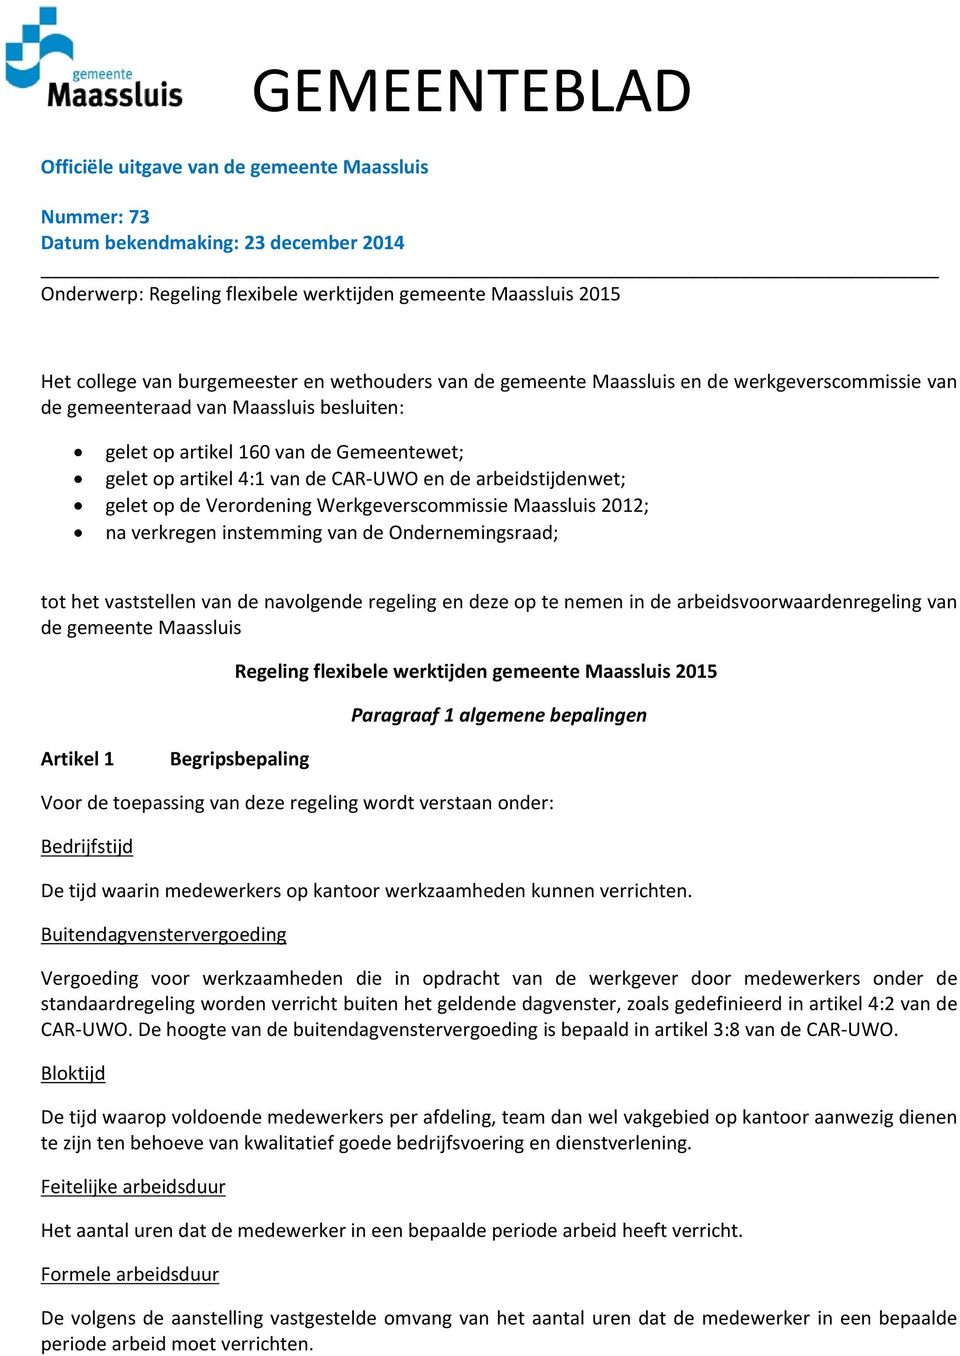 arbeidstijdenwet; gelet op de Verordening Werkgeverscommissie Maassluis 2012; na verkregen instemming van de Ondernemingsraad; tot het vaststellen van de navolgende regeling en deze op te nemen in de